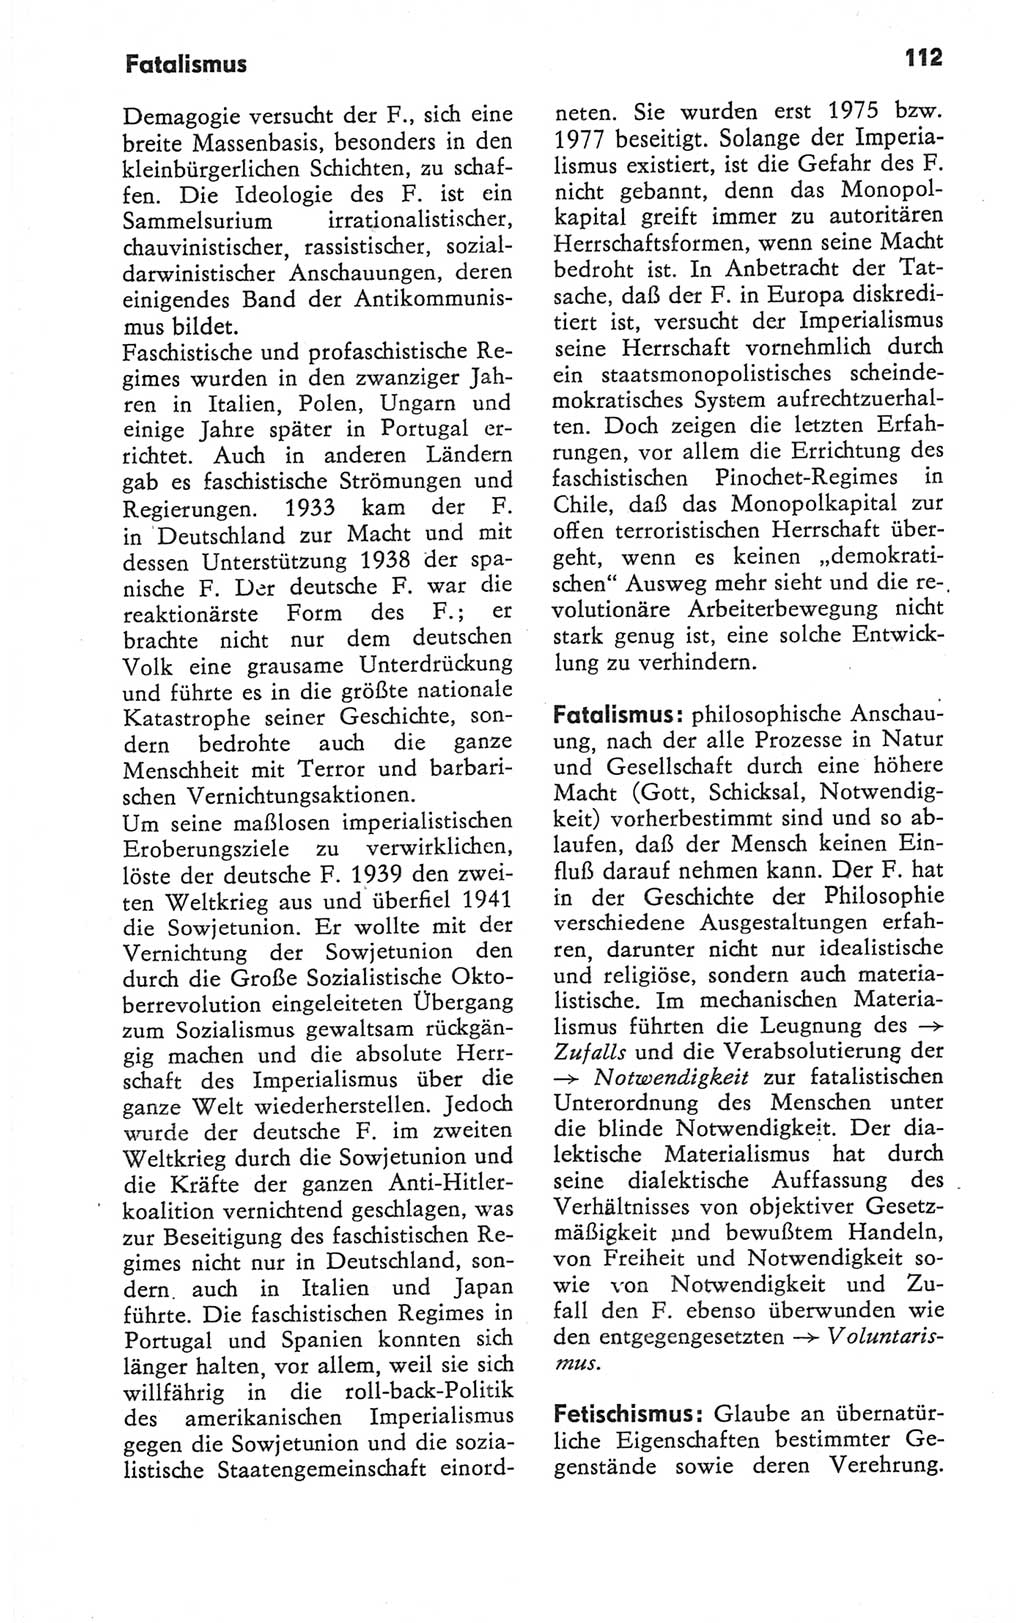 Kleines Wörterbuch der marxistisch-leninistischen Philosophie [Deutsche Demokratische Republik (DDR)] 1979, Seite 112 (Kl. Wb. ML Phil. DDR 1979, S. 112)